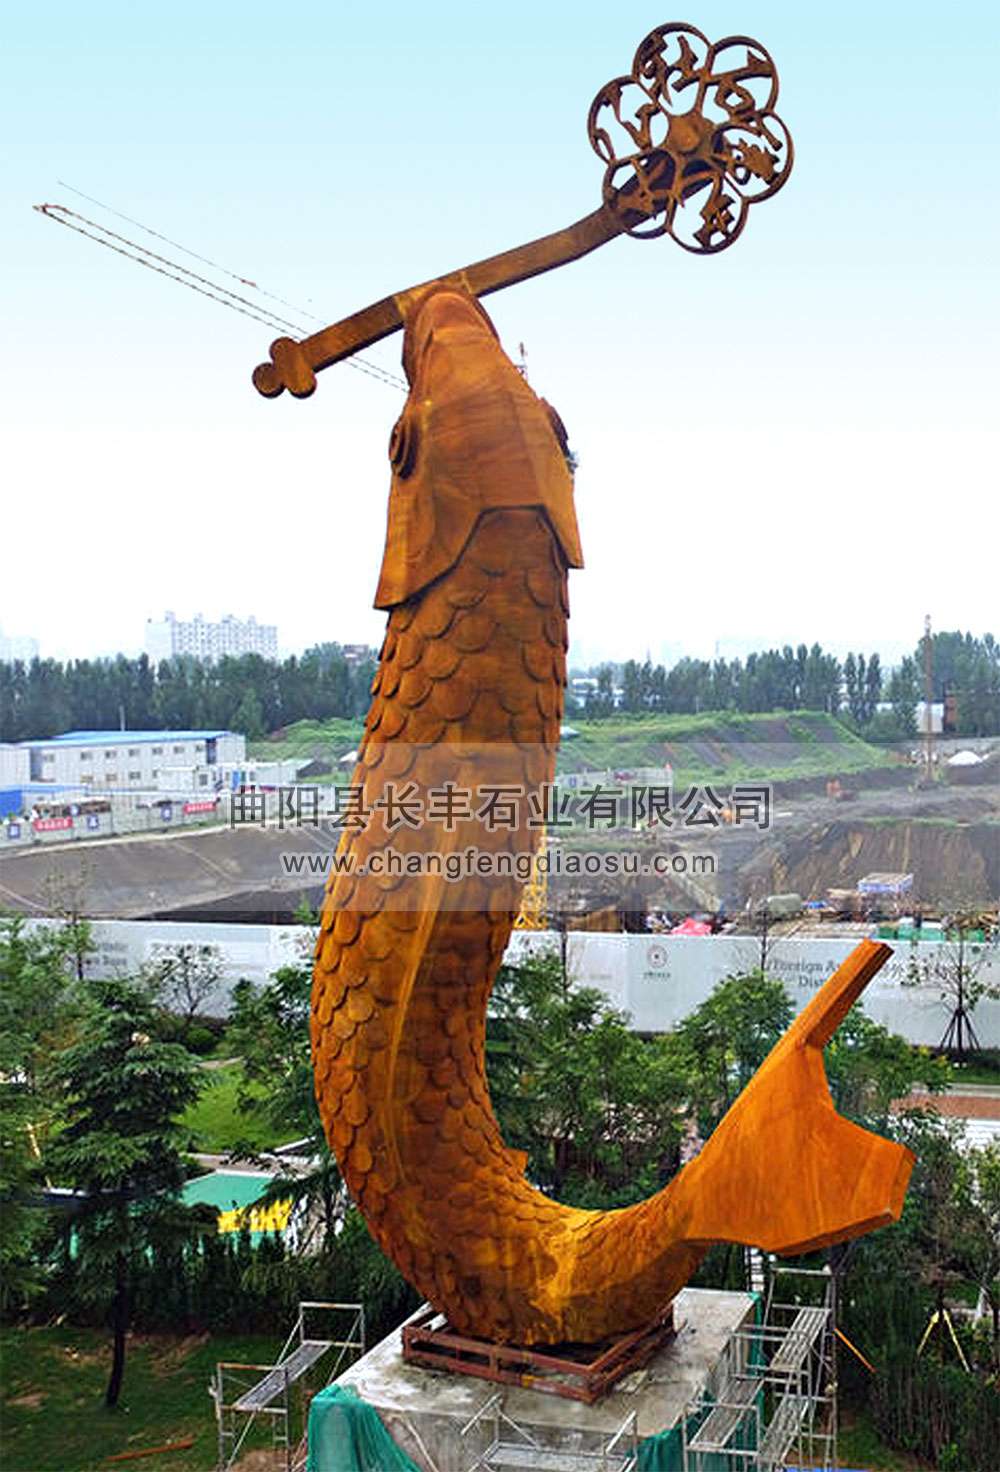 年年有余-河南郑州石佛艺术鲤鱼雕塑-1004.jpg